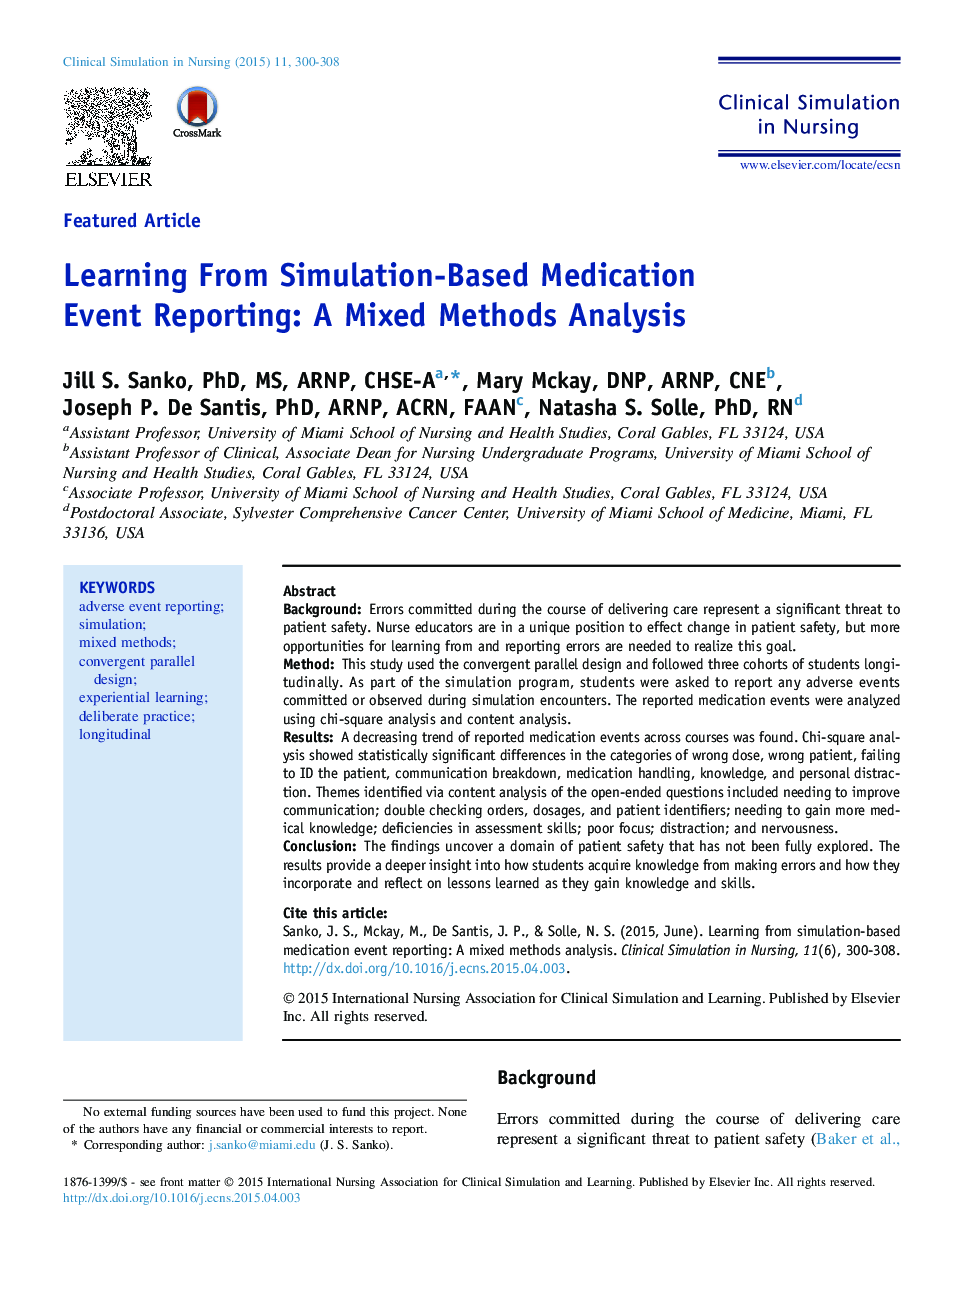 آموزش مبتنی بر شبیه سازی داروها گزارش رویداد: تجزیه و تحلیل روش های ترکیبی 